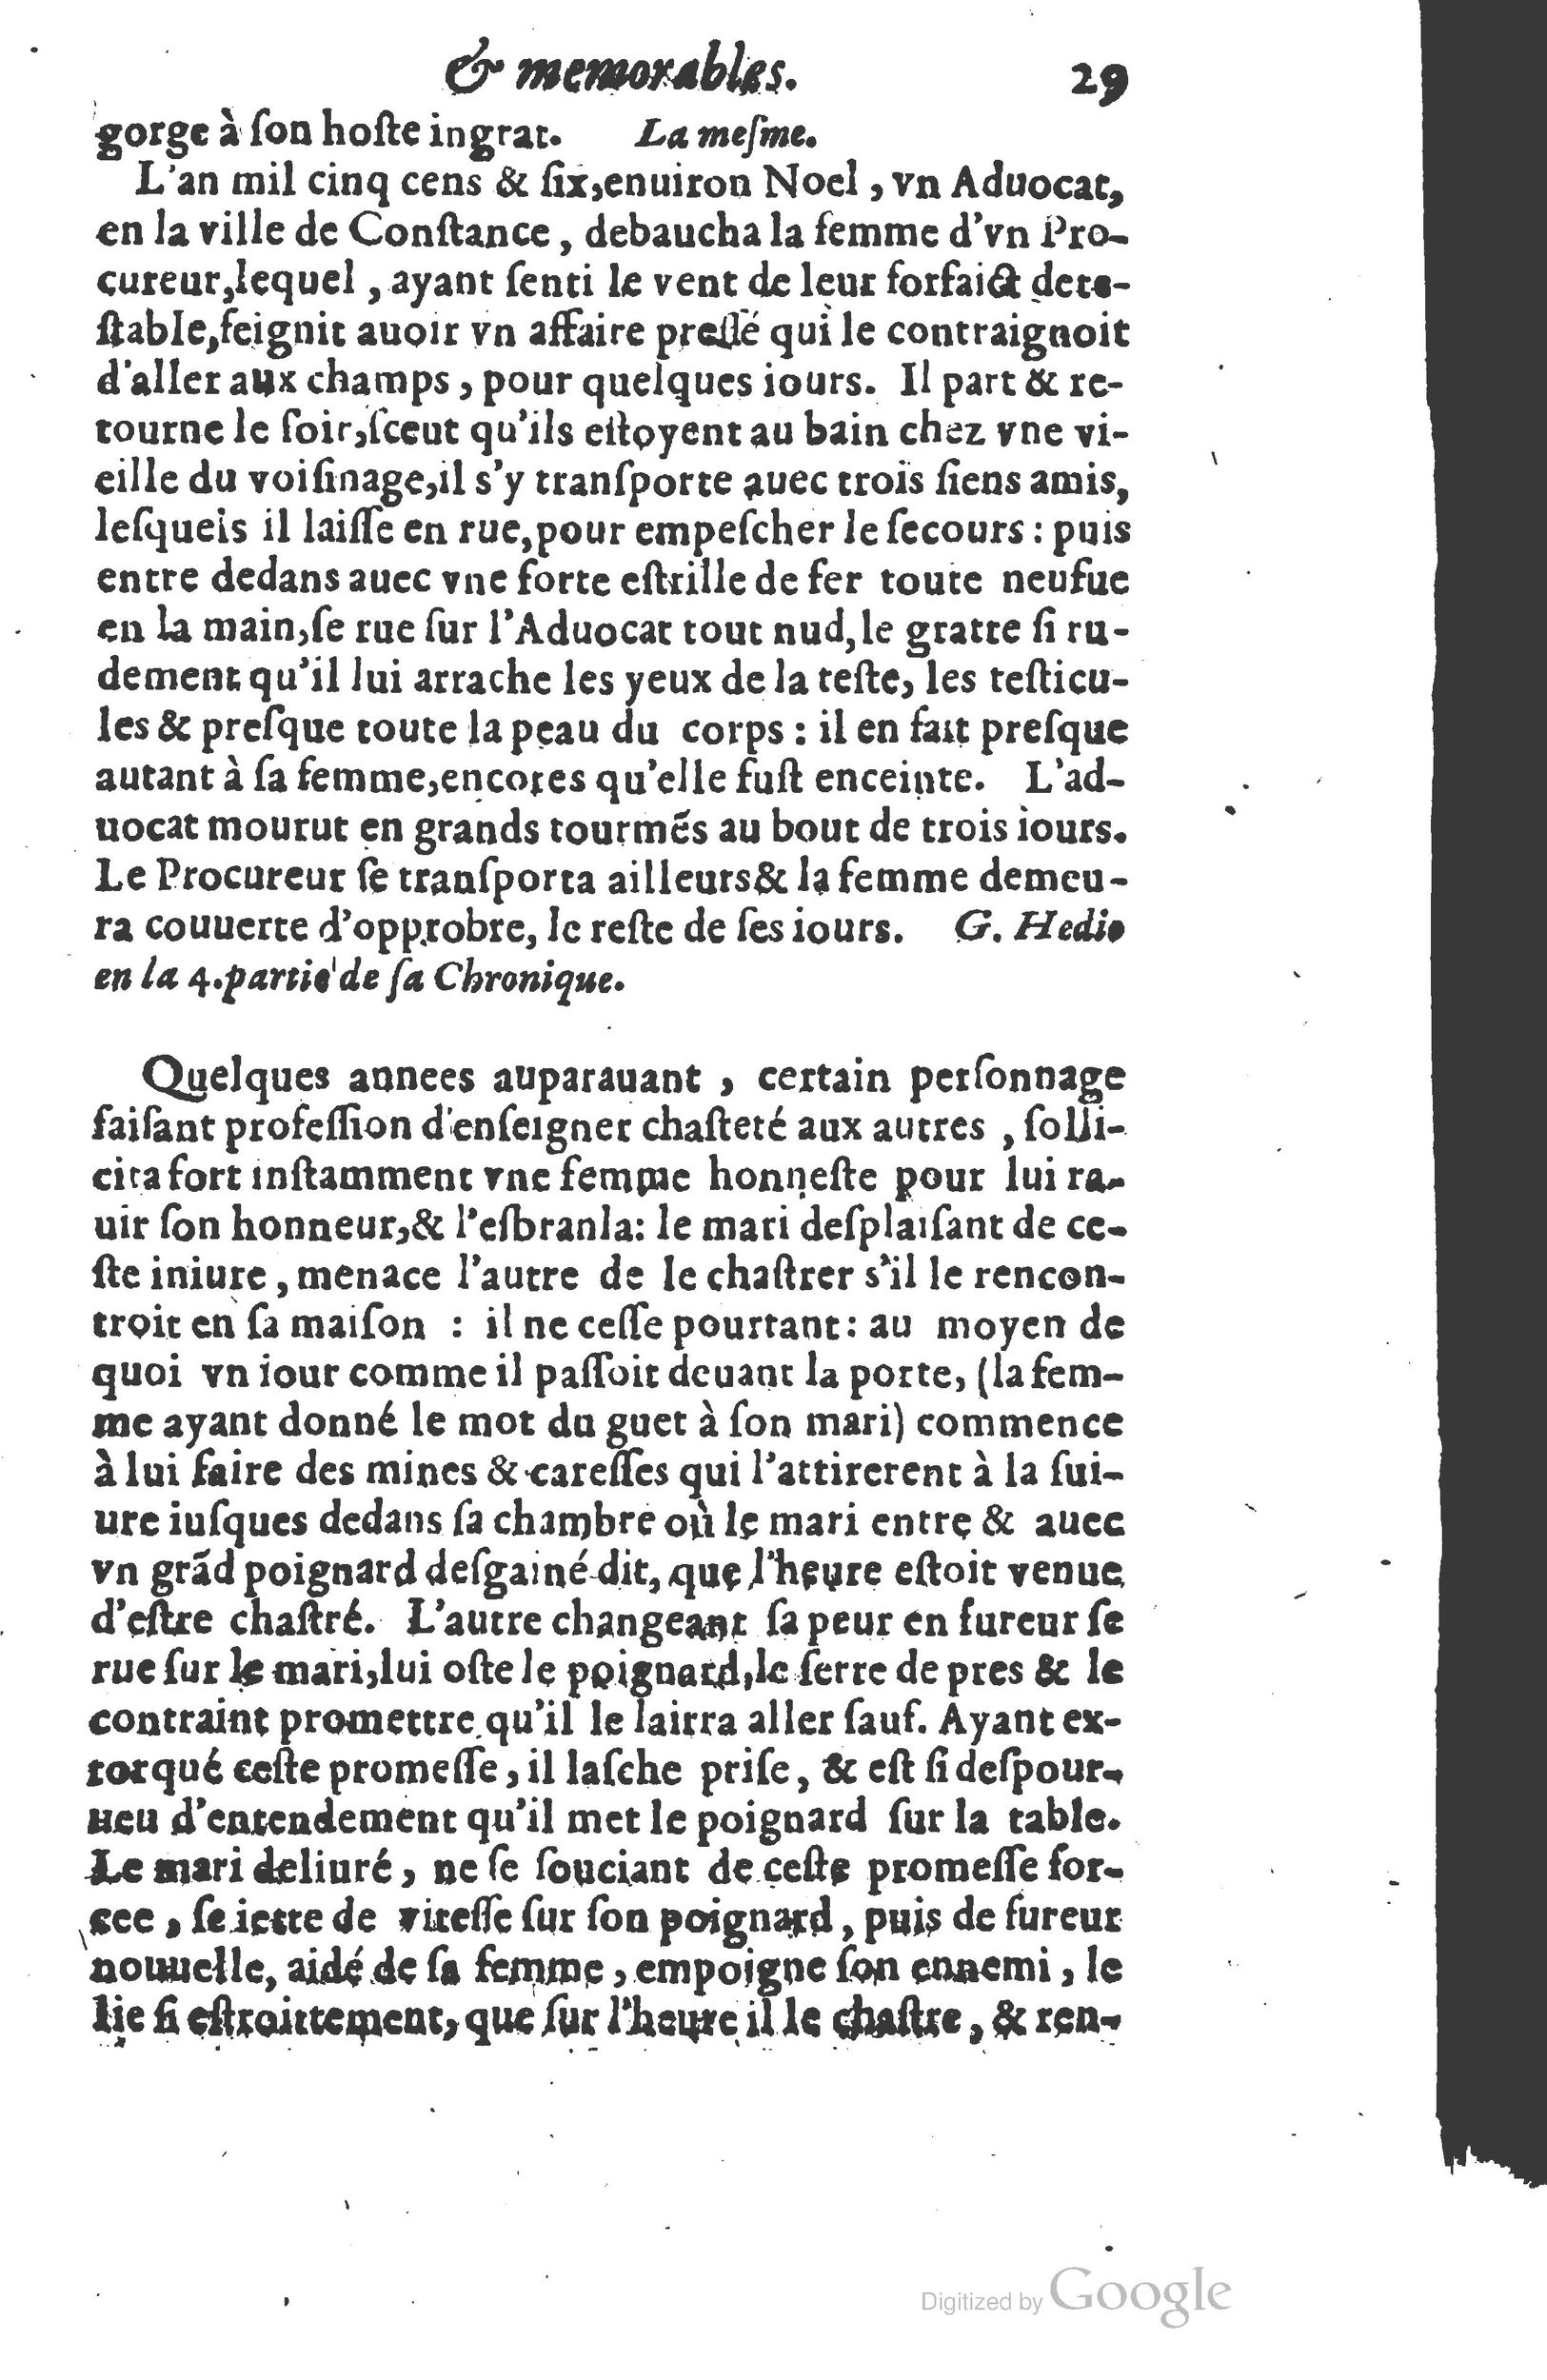 1610 Trésor d’histoires admirables et mémorables de nostre temps Marceau Princeton_Page_0050.jpg